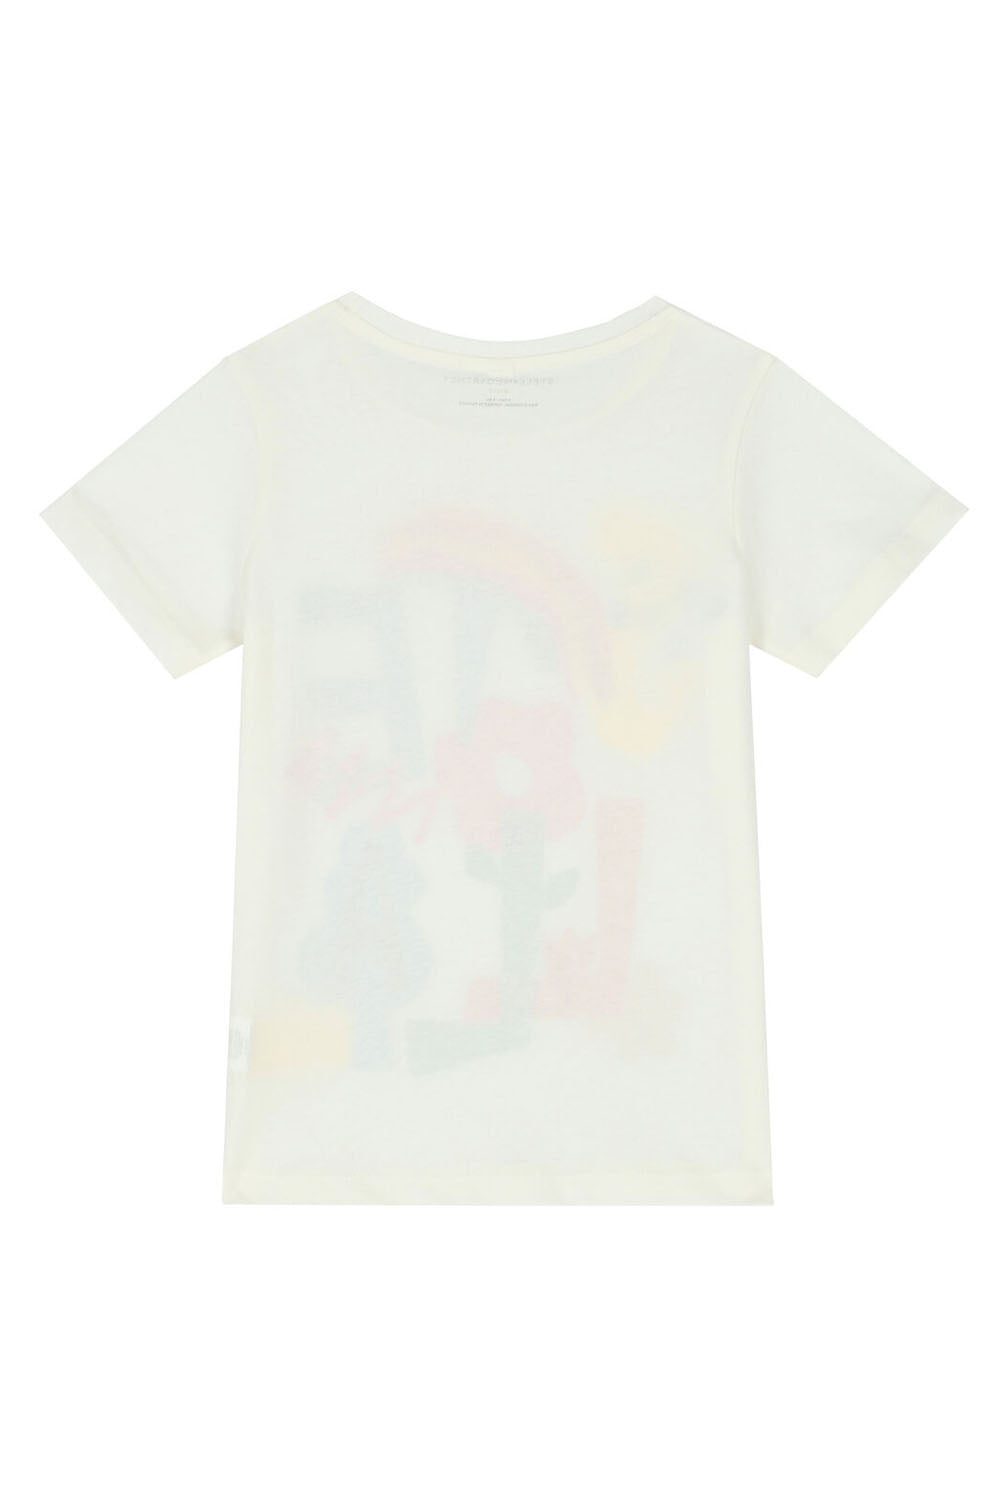 Logo Flower Rainbow T-Shirt for Girls - Maison7